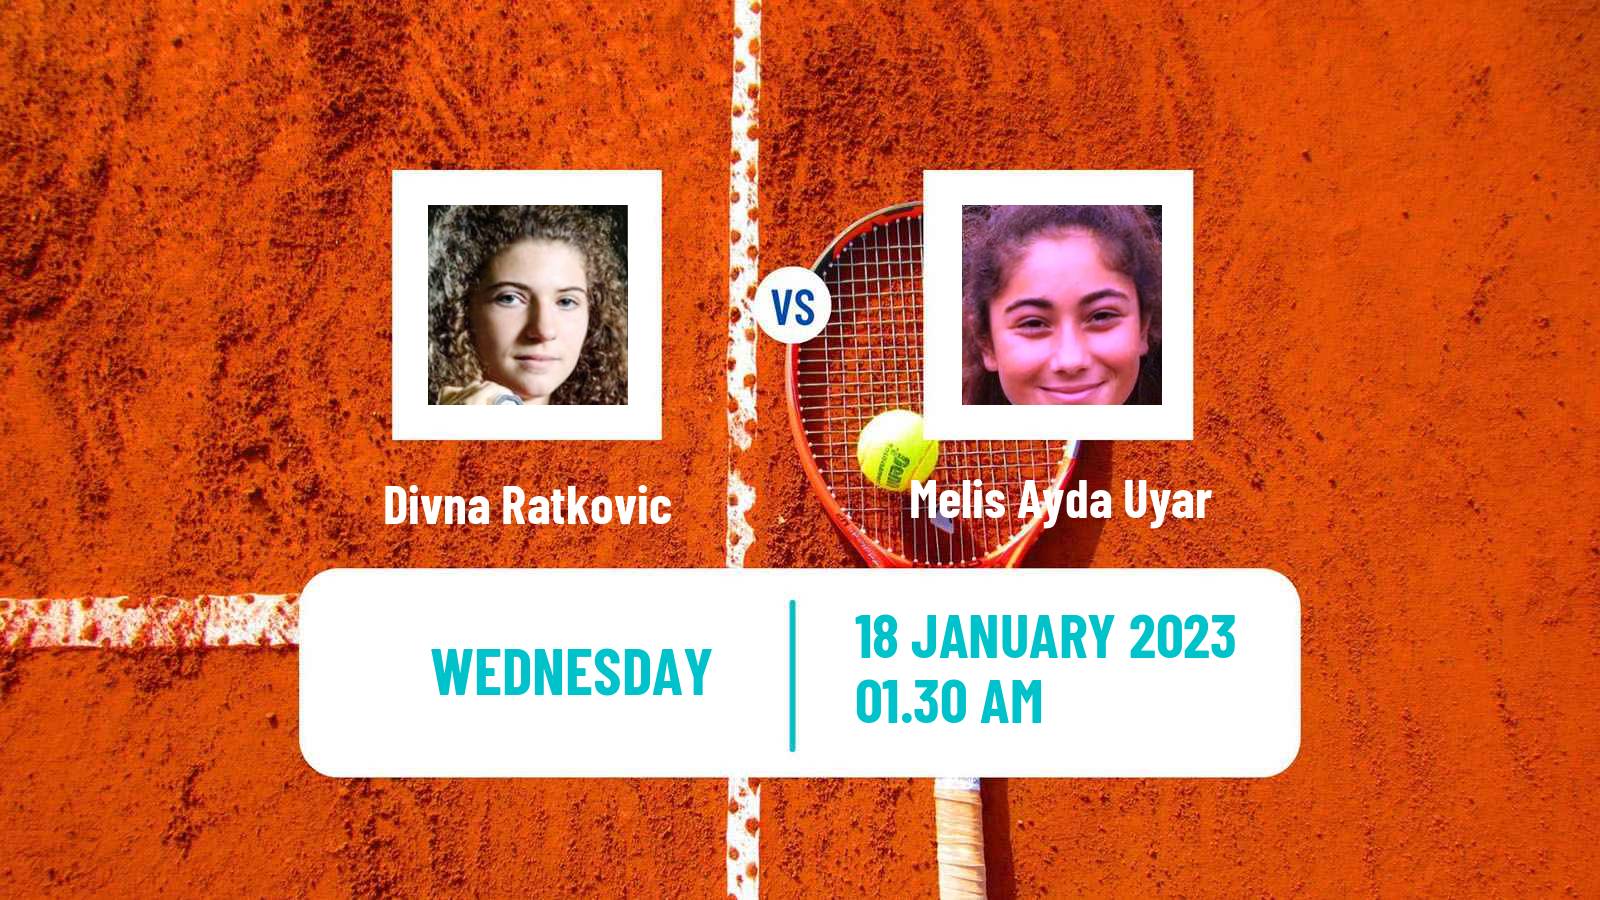 Tennis ITF Tournaments Divna Ratkovic - Melis Ayda Uyar